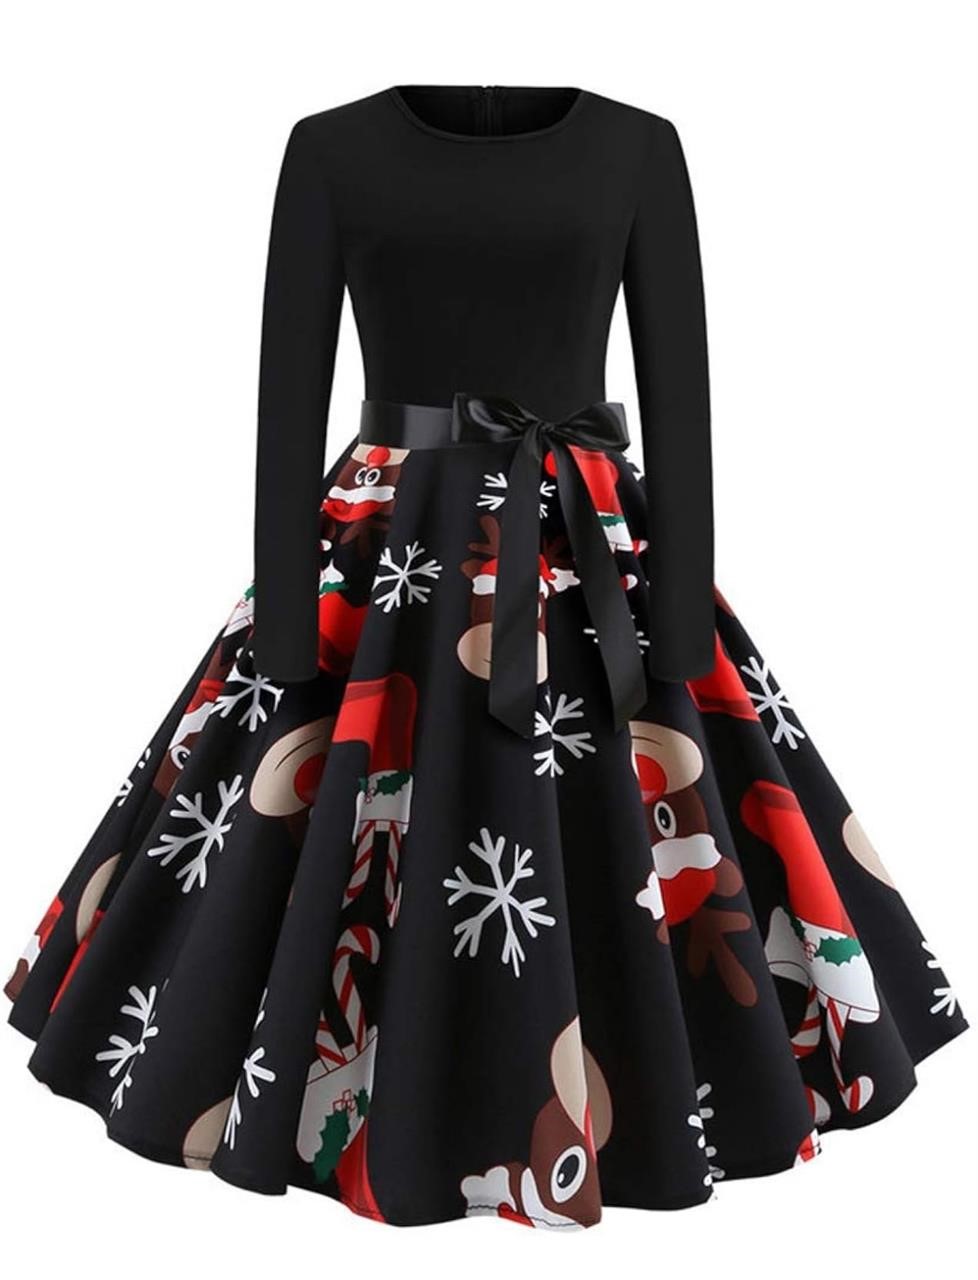 ($39)Paskyee Christmas Dresses